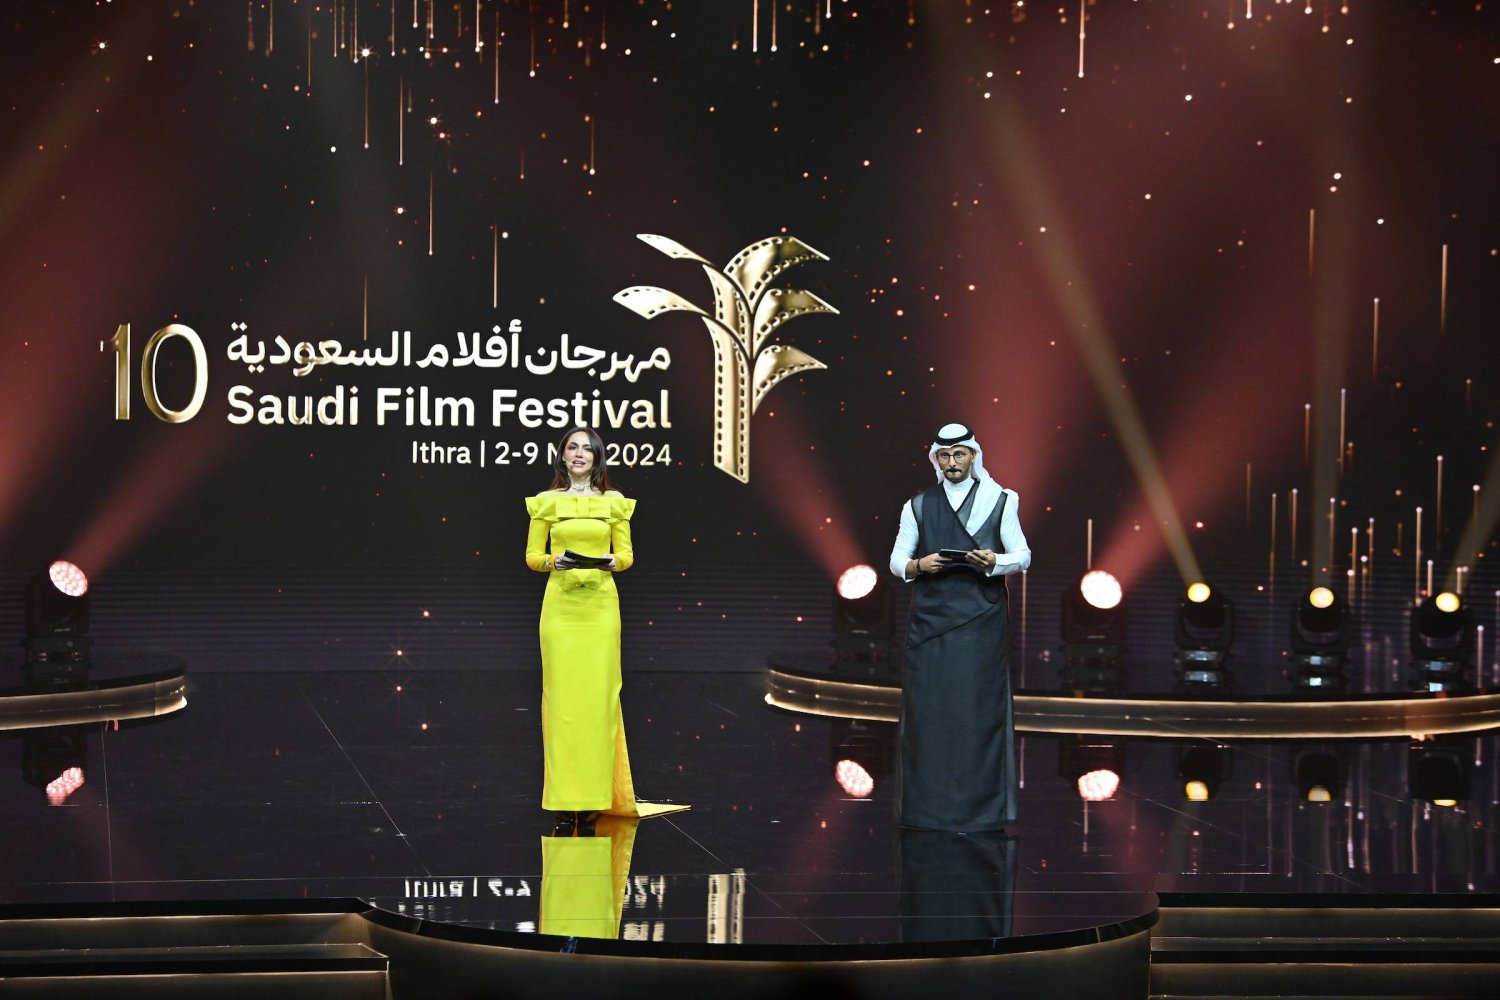 أفلام السعودية... افتتاح مبهر لدورة استثنائية